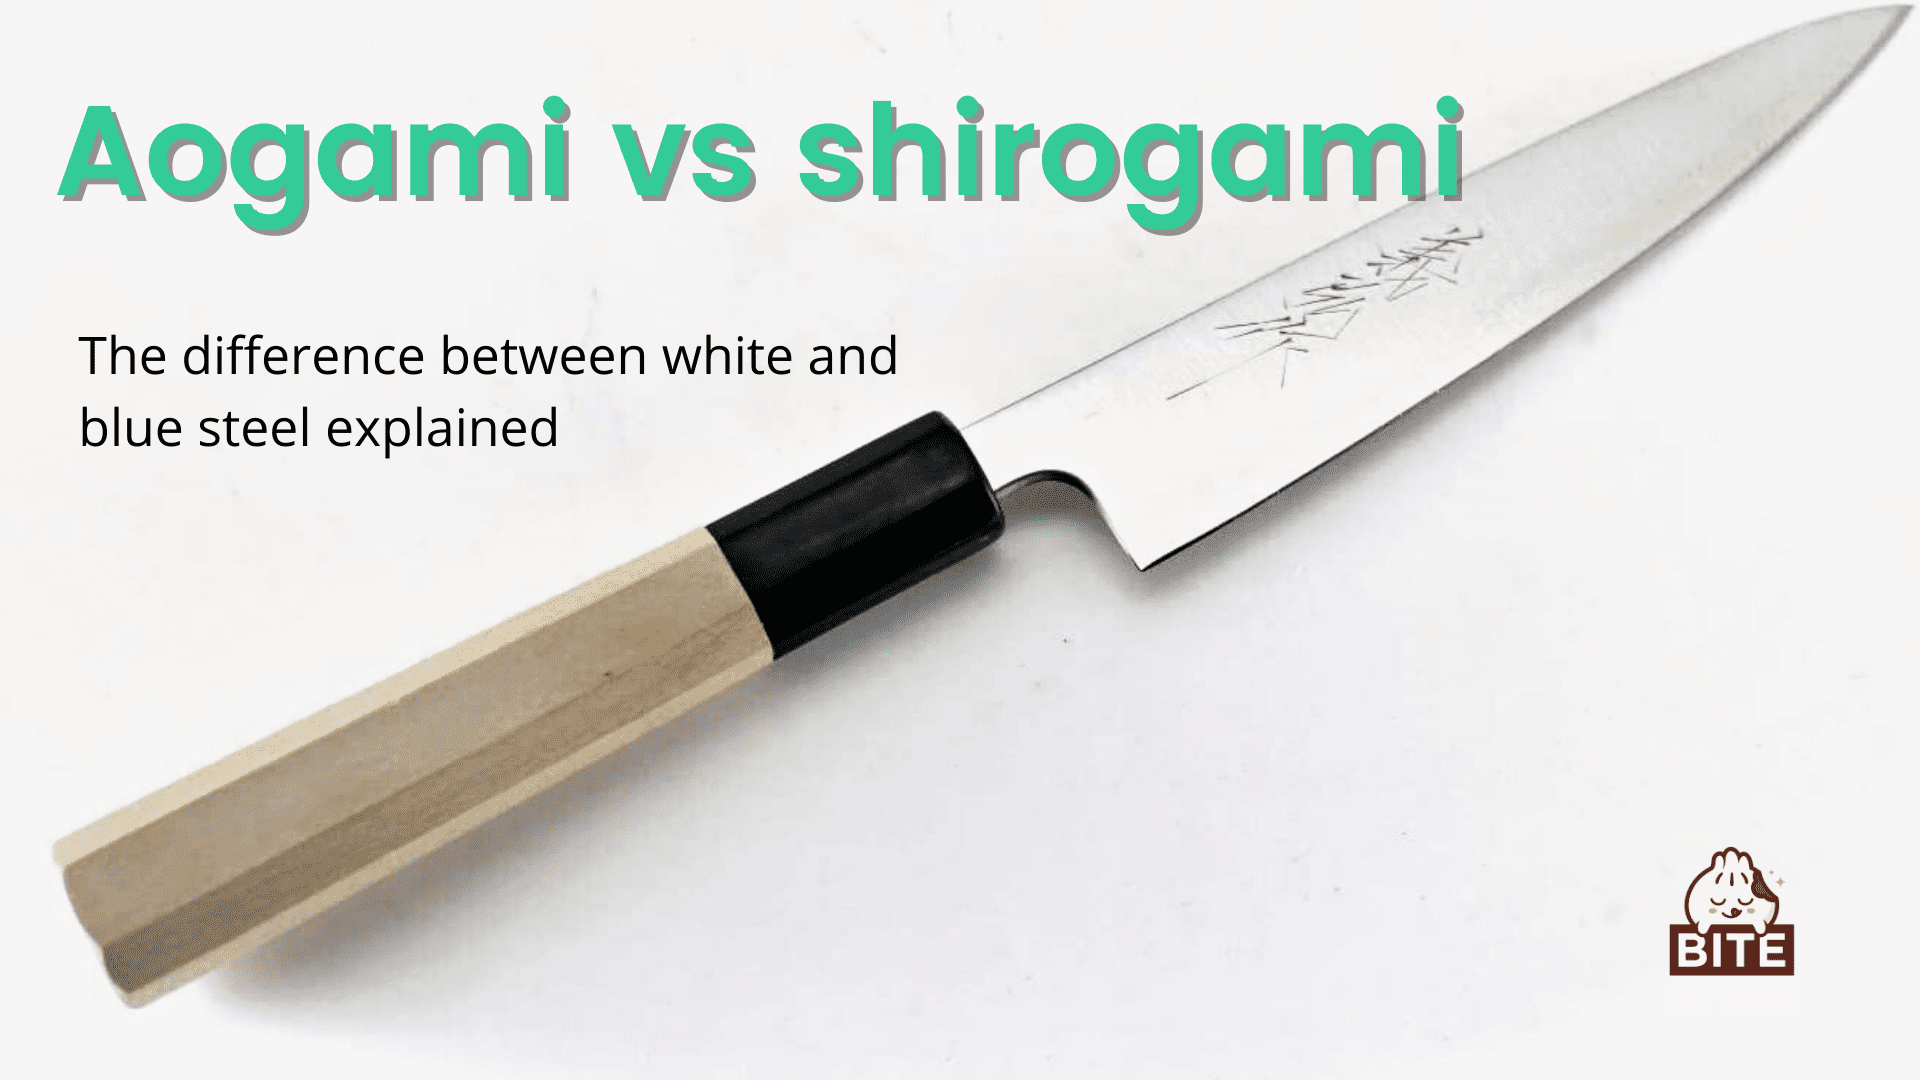 Aogami vs shirogami | Phapang pakeng tsa tšepe e tšoeu le e putsoa e hlalositsoe